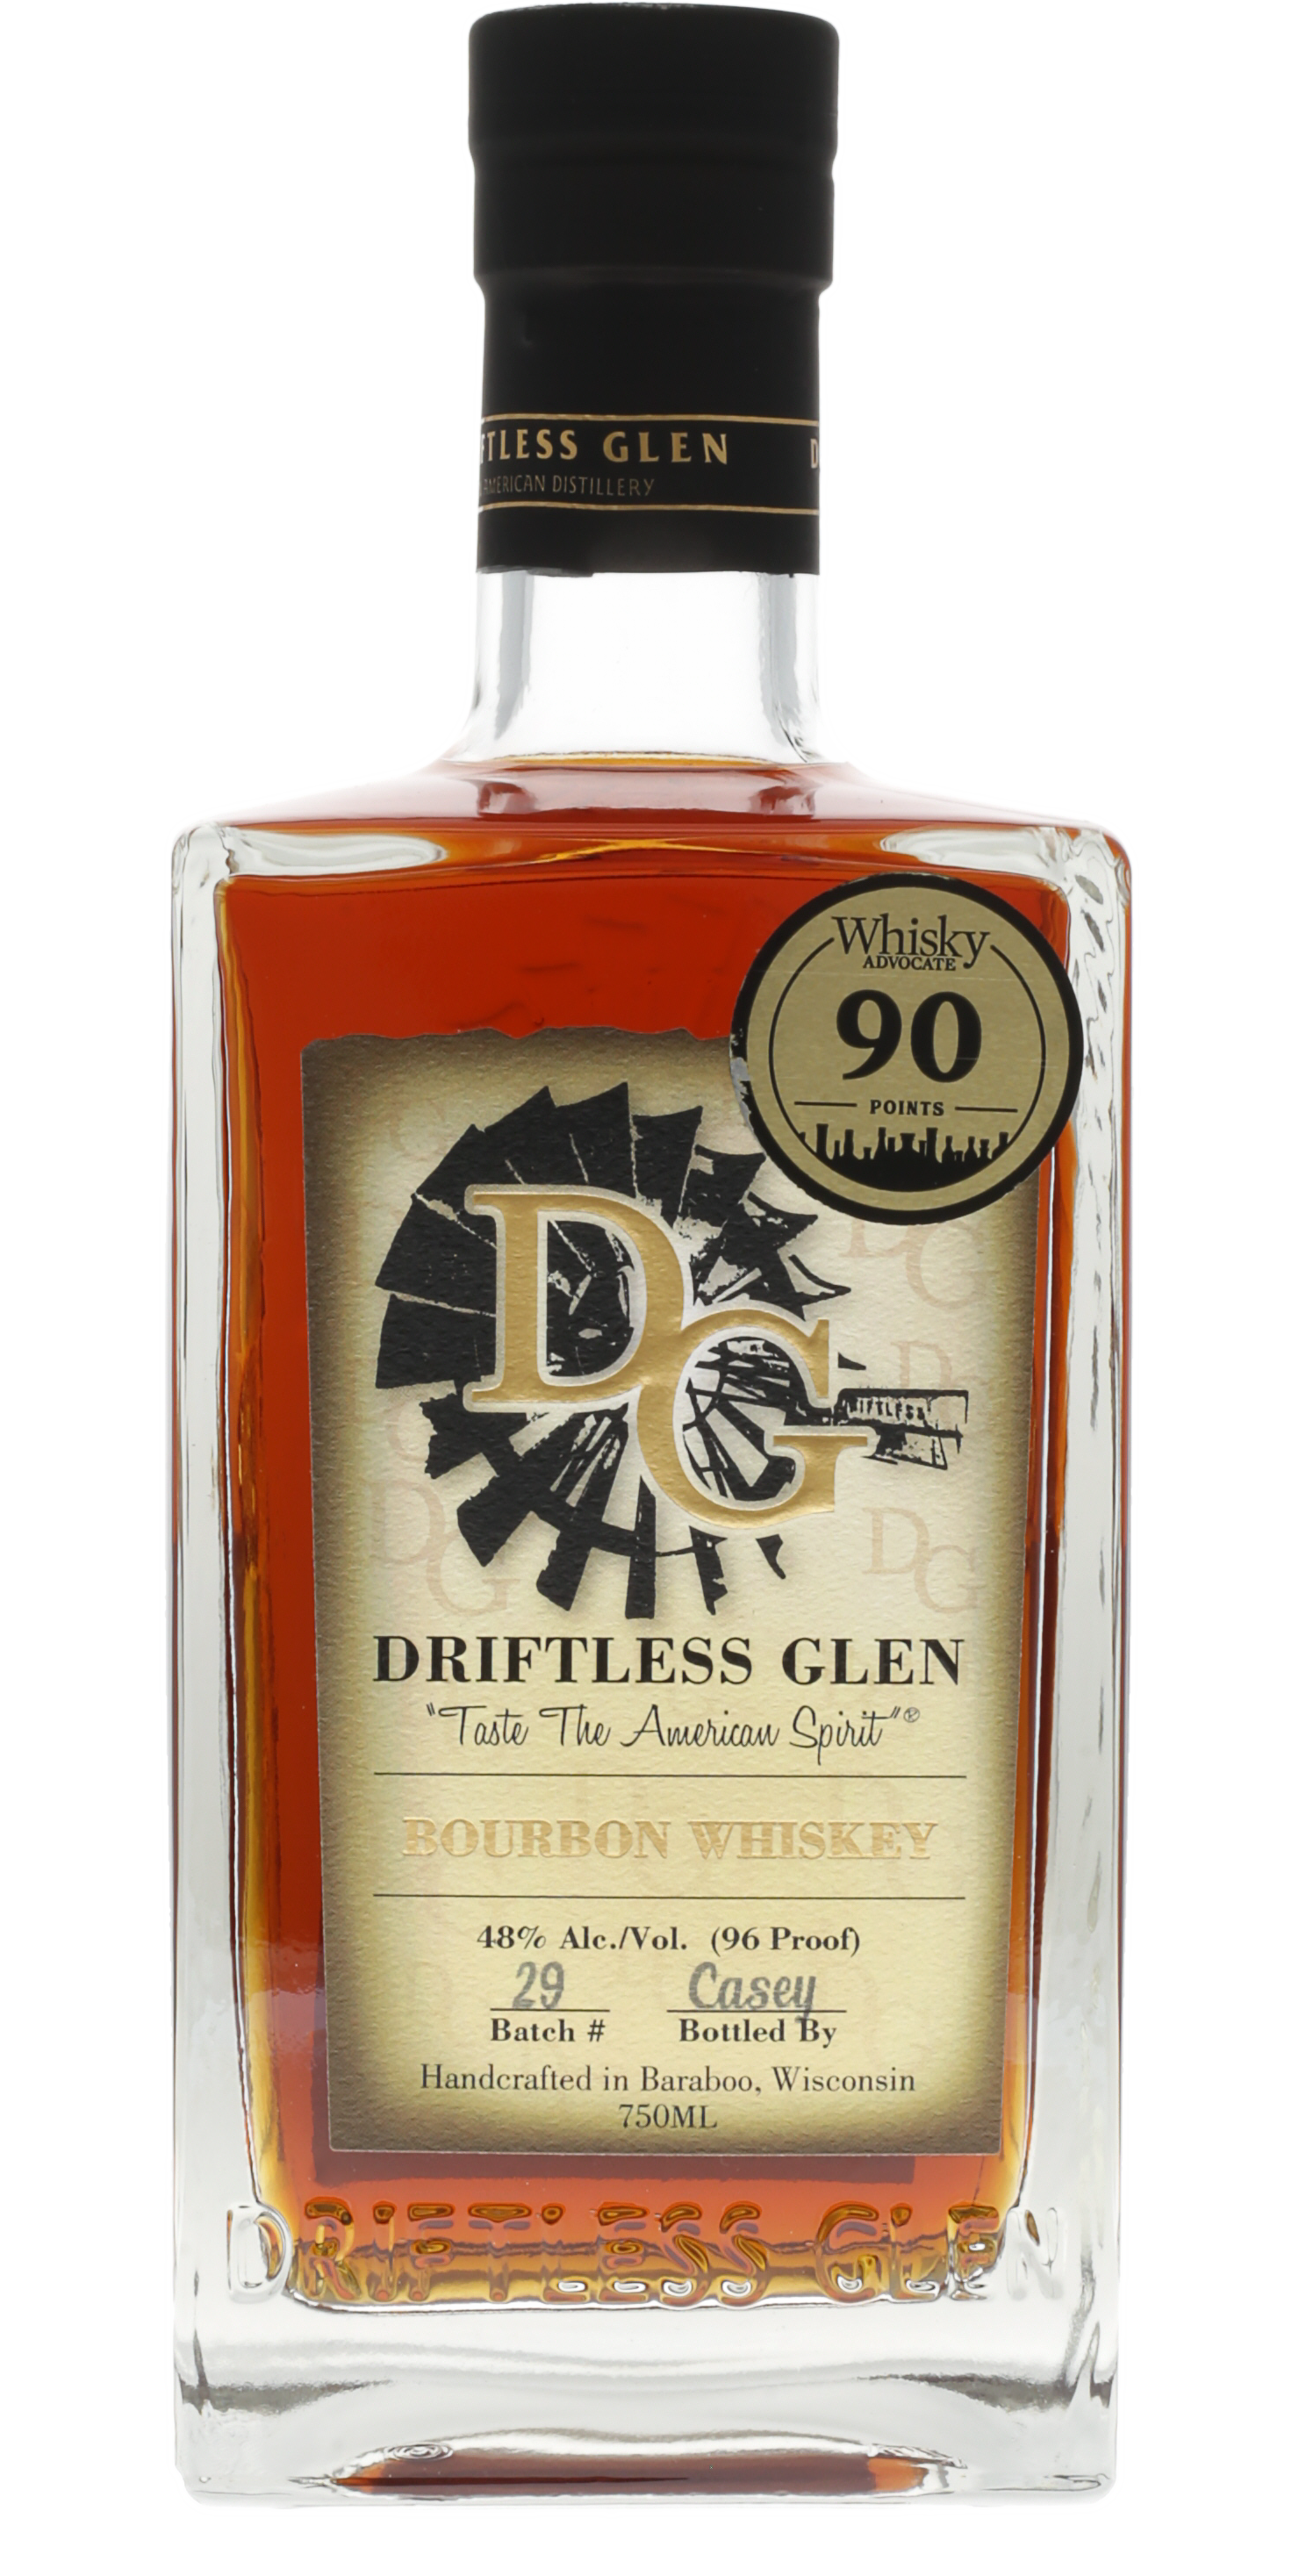 Driftless Glen Bourbon Whiskey